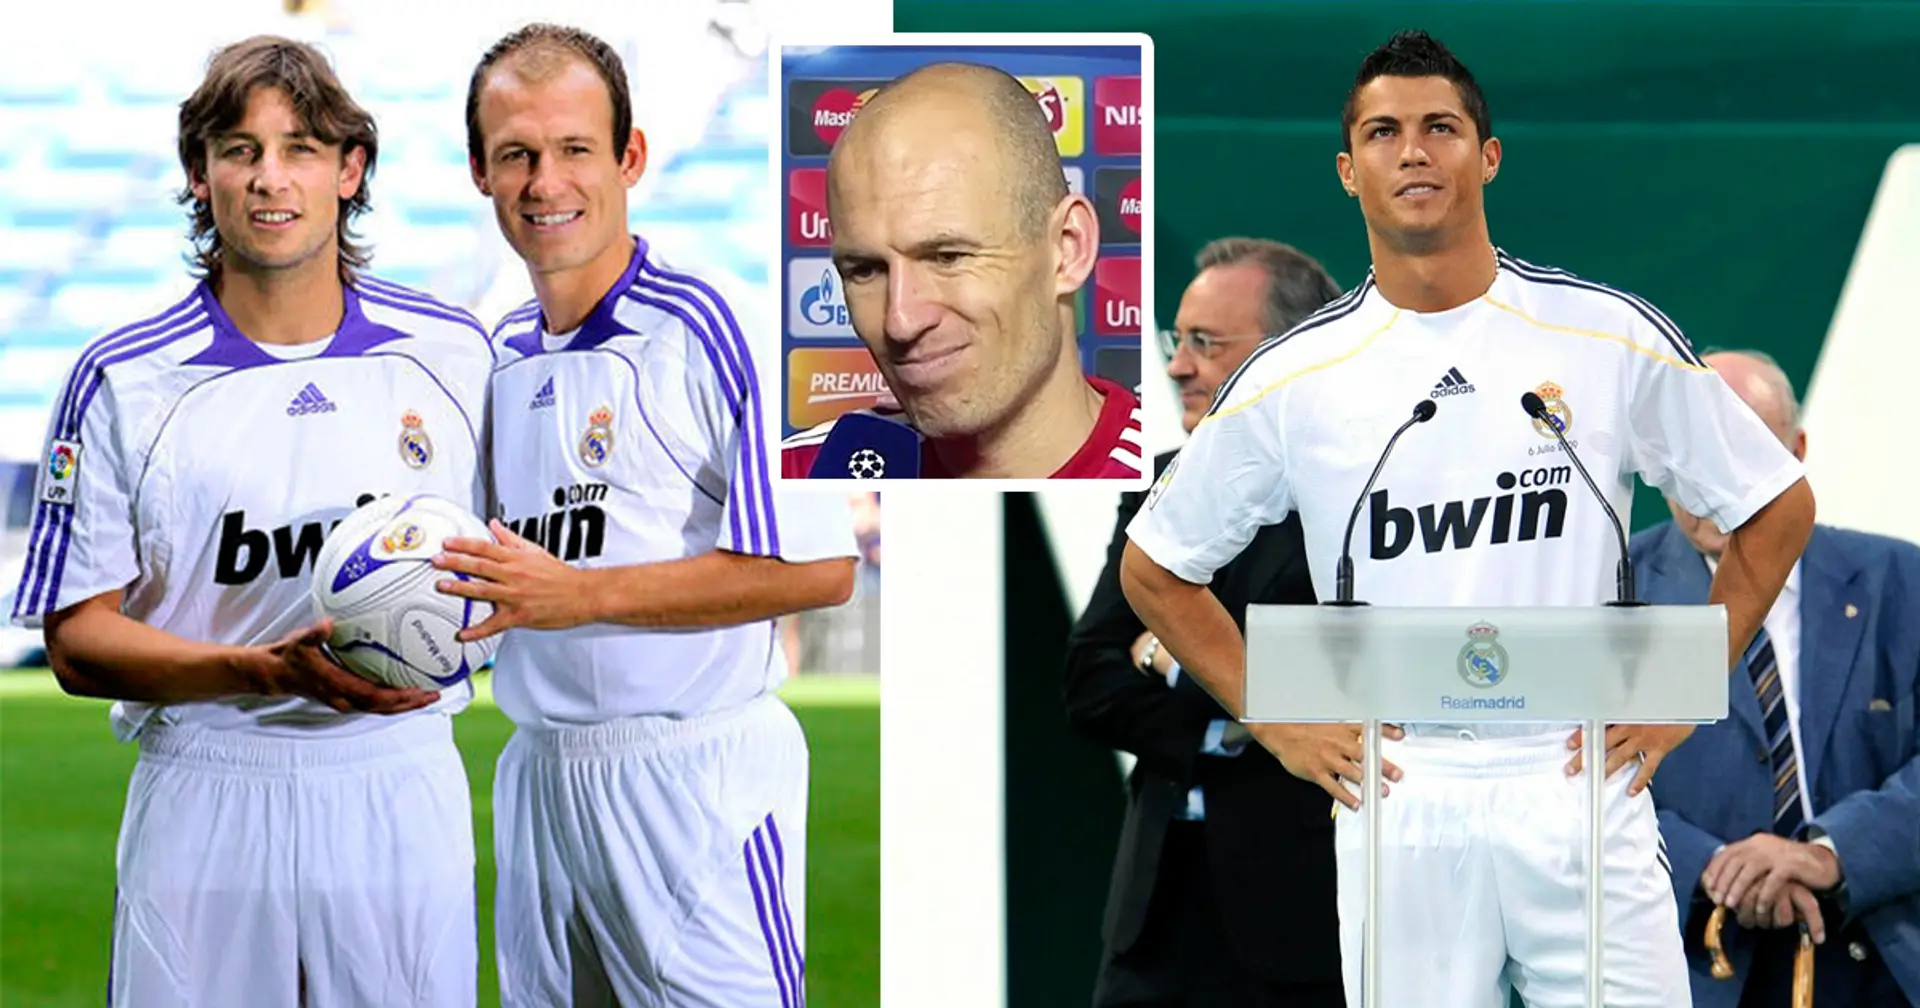 "Ce n'était pas que Ronaldo": Robben révèle pourquoi quitter le Real Madrid pour le Bayern était la "meilleure décision" pour lui